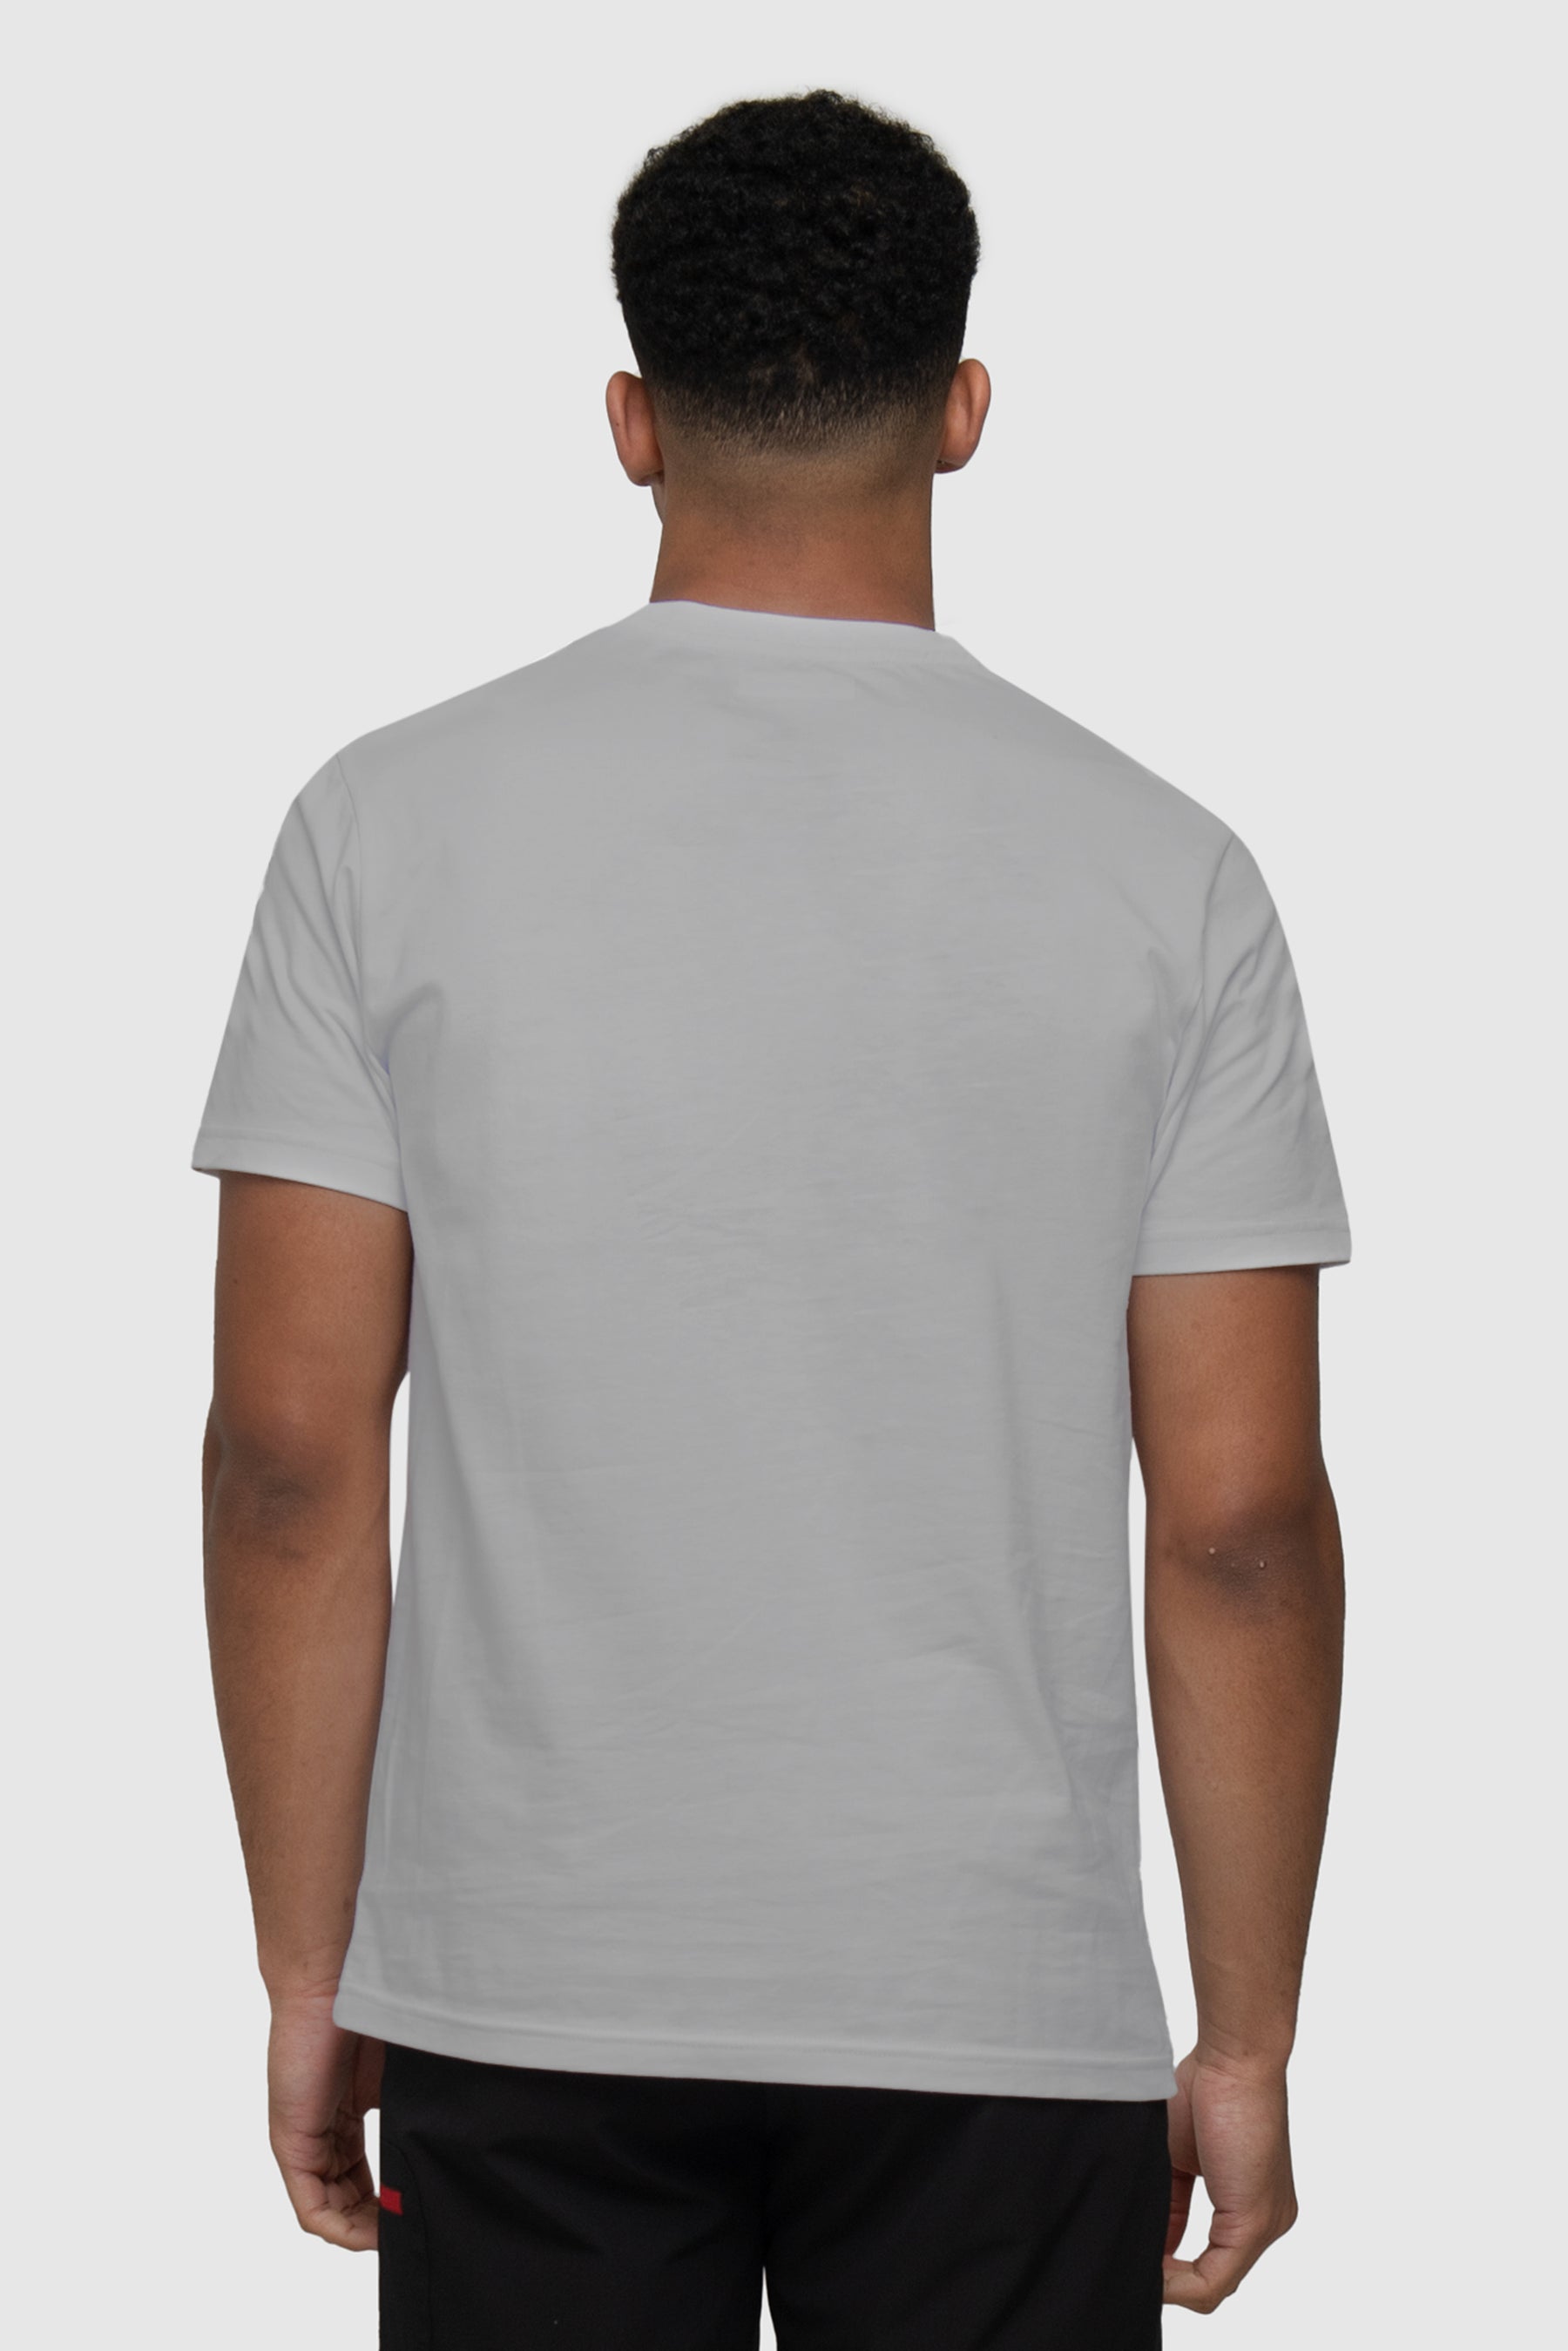 Trail Box T-Shirt - Platinum Grey - Montirex